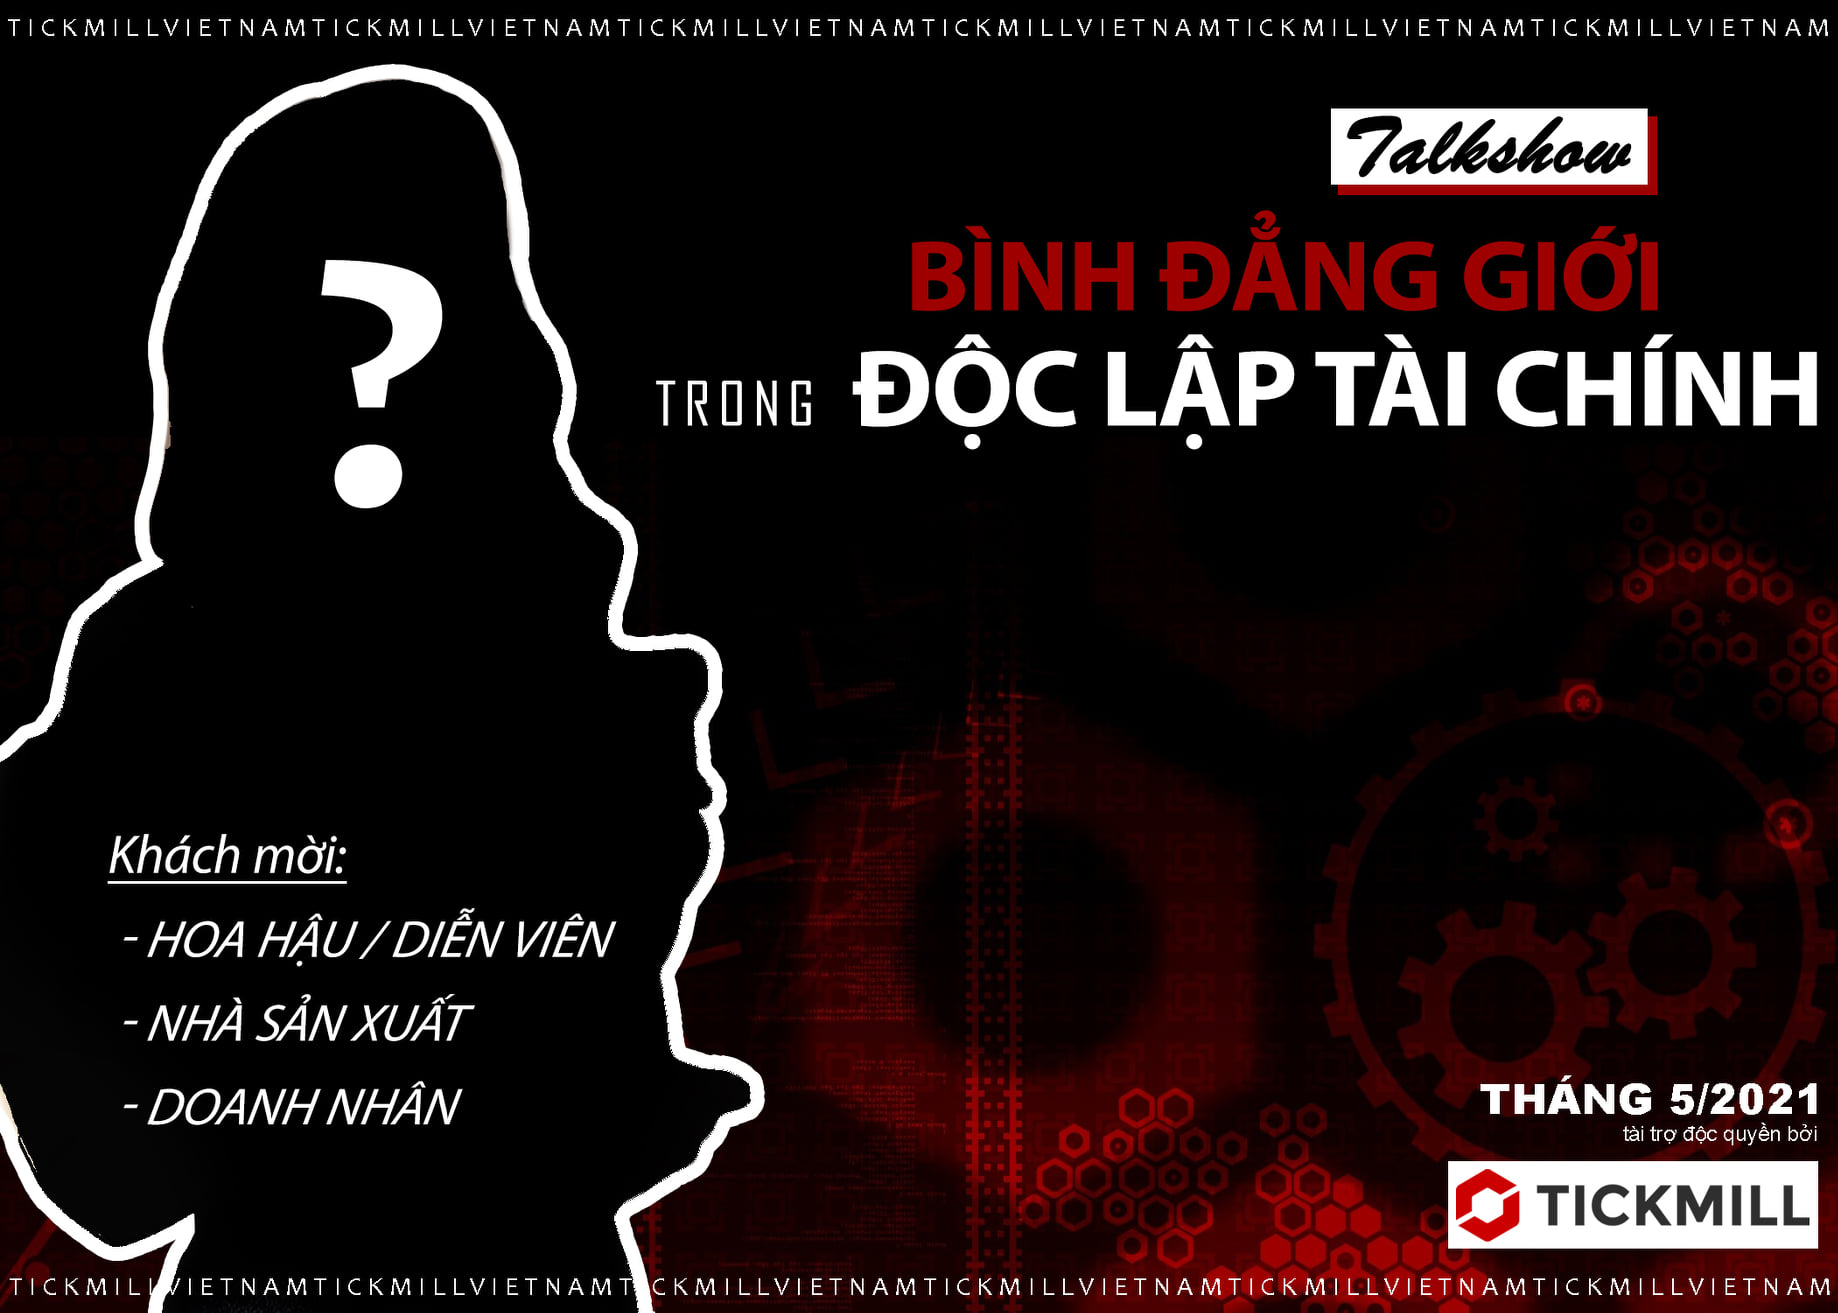 Một sự kiện "SIÊU HOT" sắp được diễn ra tại Tickmill Việt Nam trong tháng 5